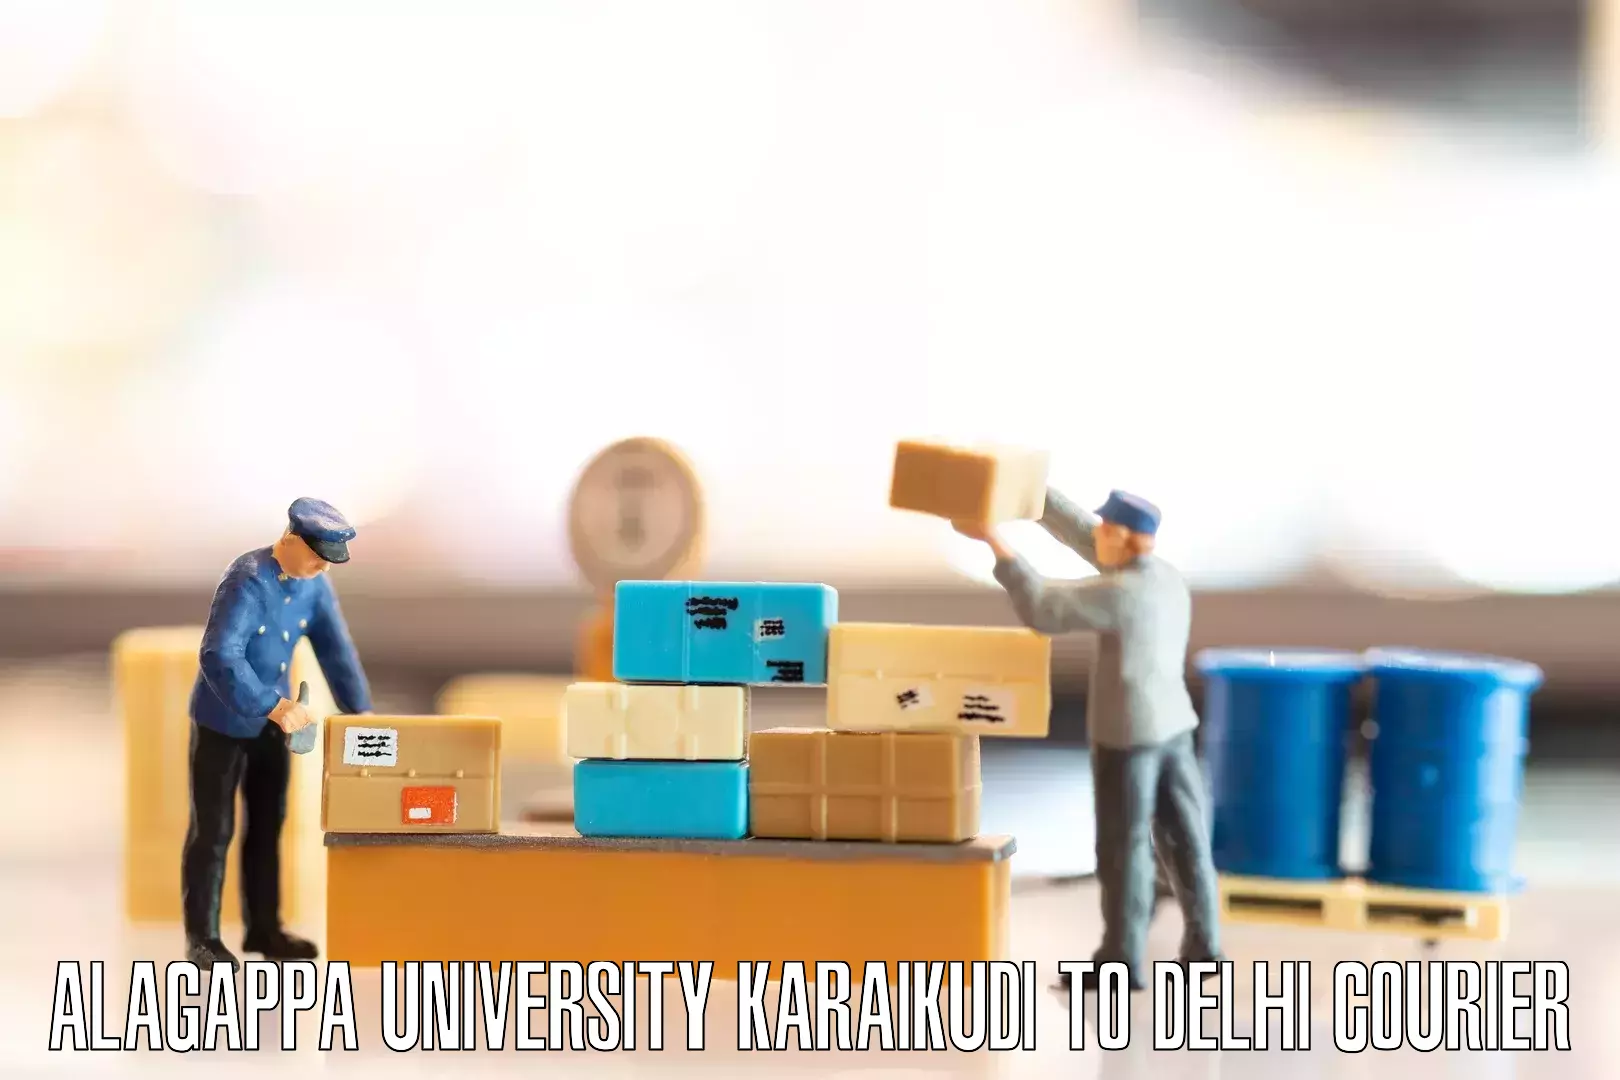 Moving and packing experts in Alagappa University Karaikudi to NCR